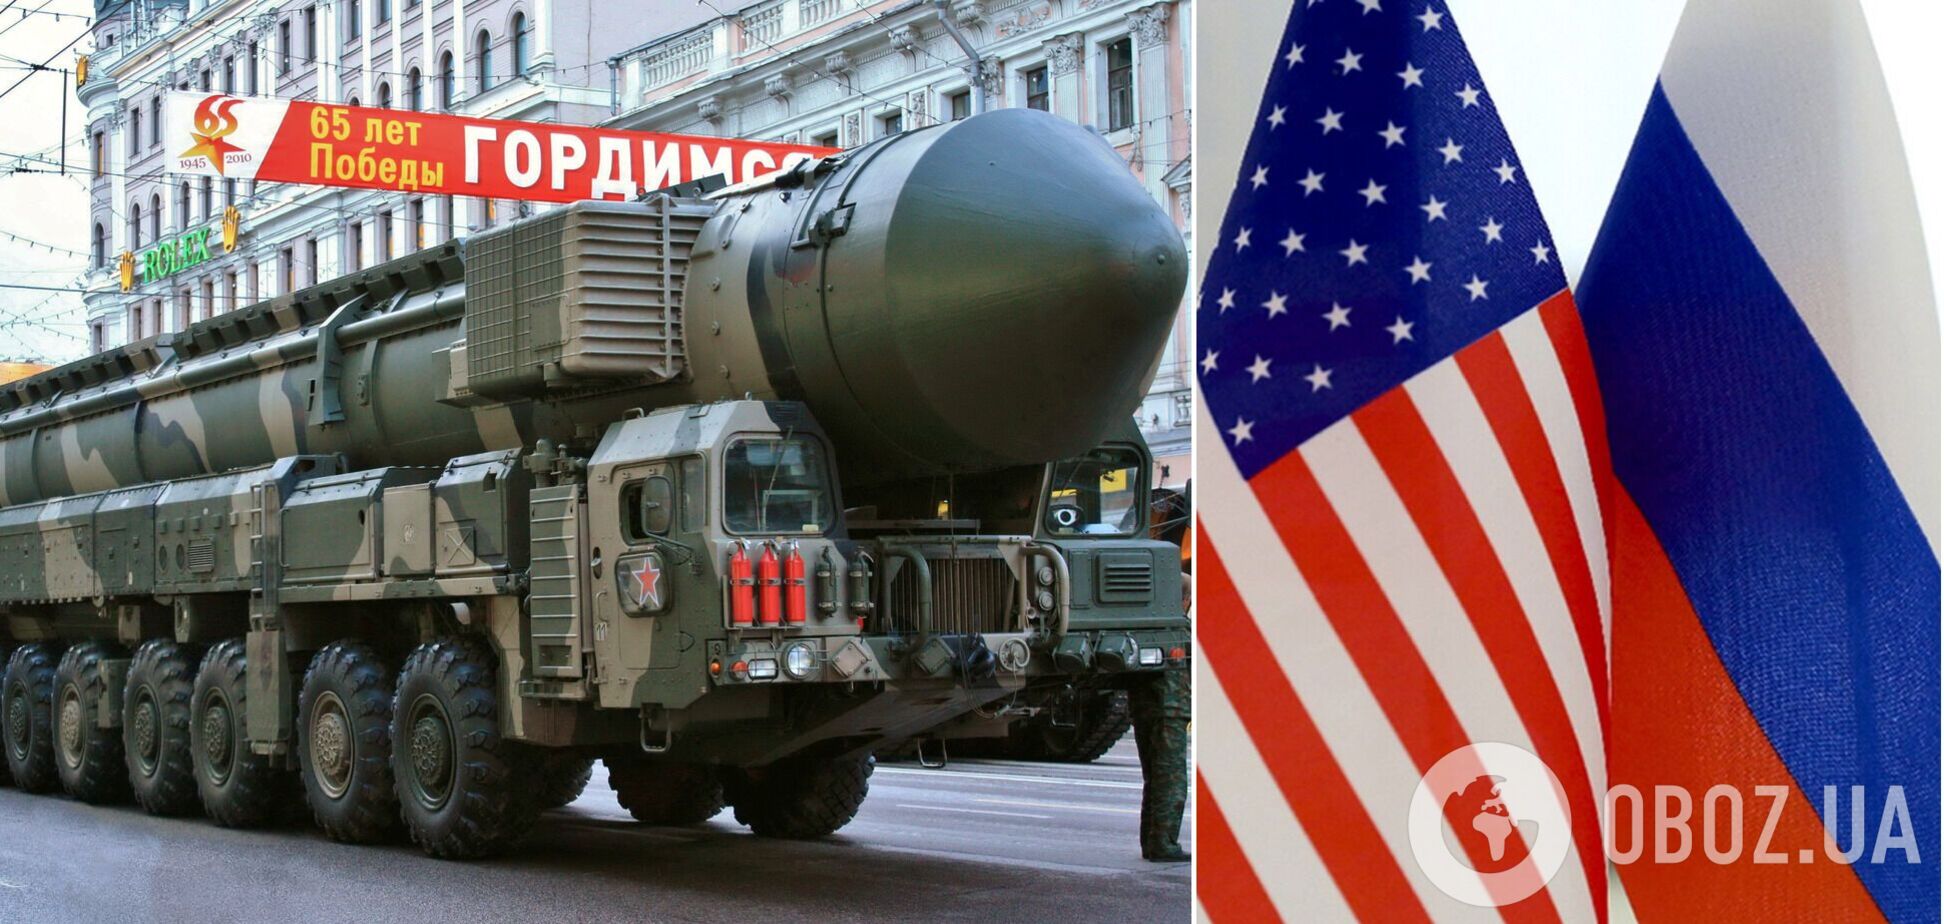 Россия нарушает договор о контроле над ядерными вооружениями, не допуская инспекции – Госдеп